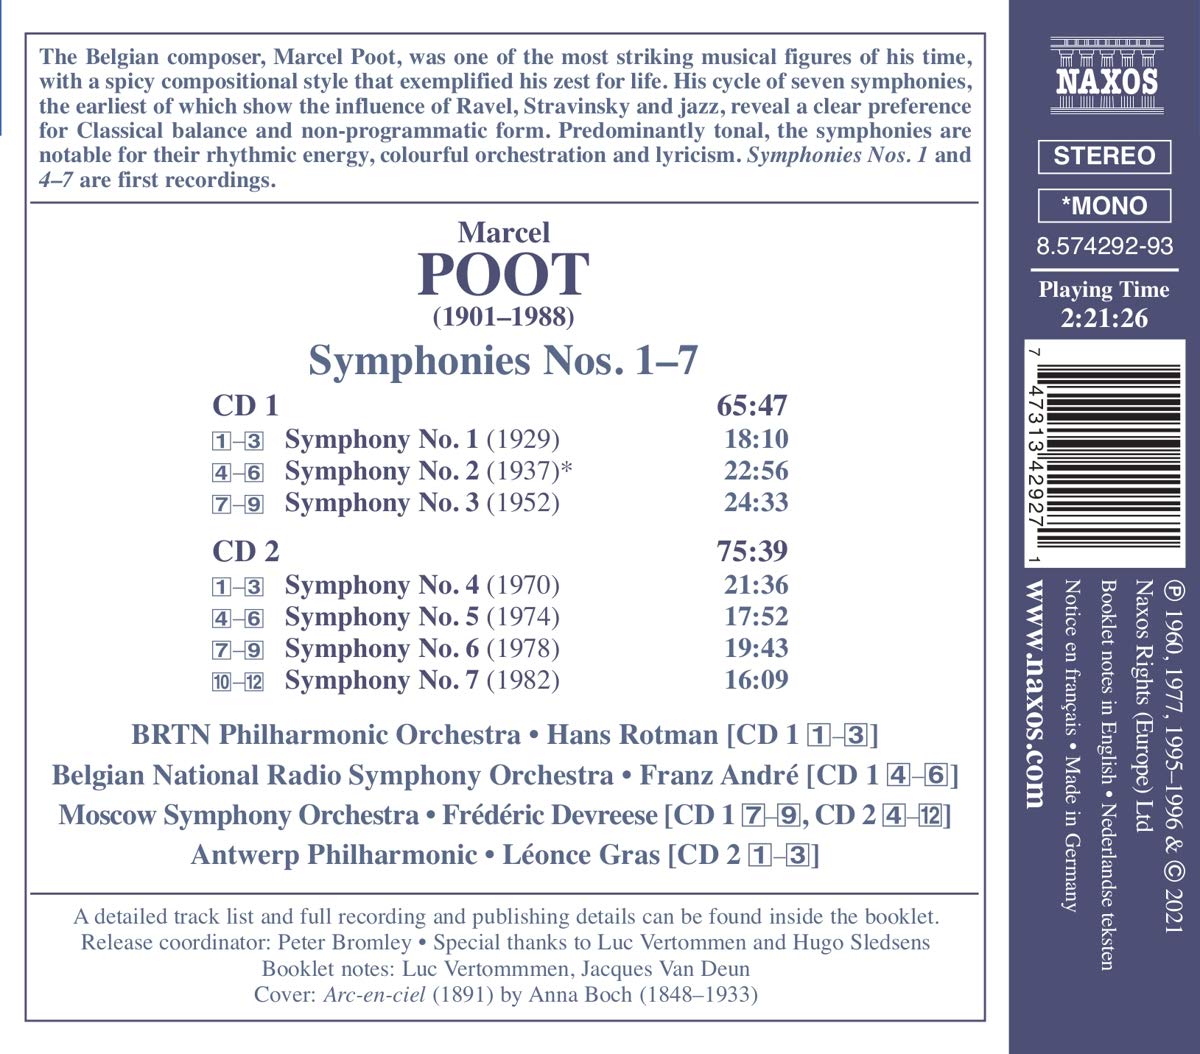 Franz Andre 마르셀 풋 : 교향곡 1-7번 (Marcel Poot: Symphonies Nos. 1-7) 